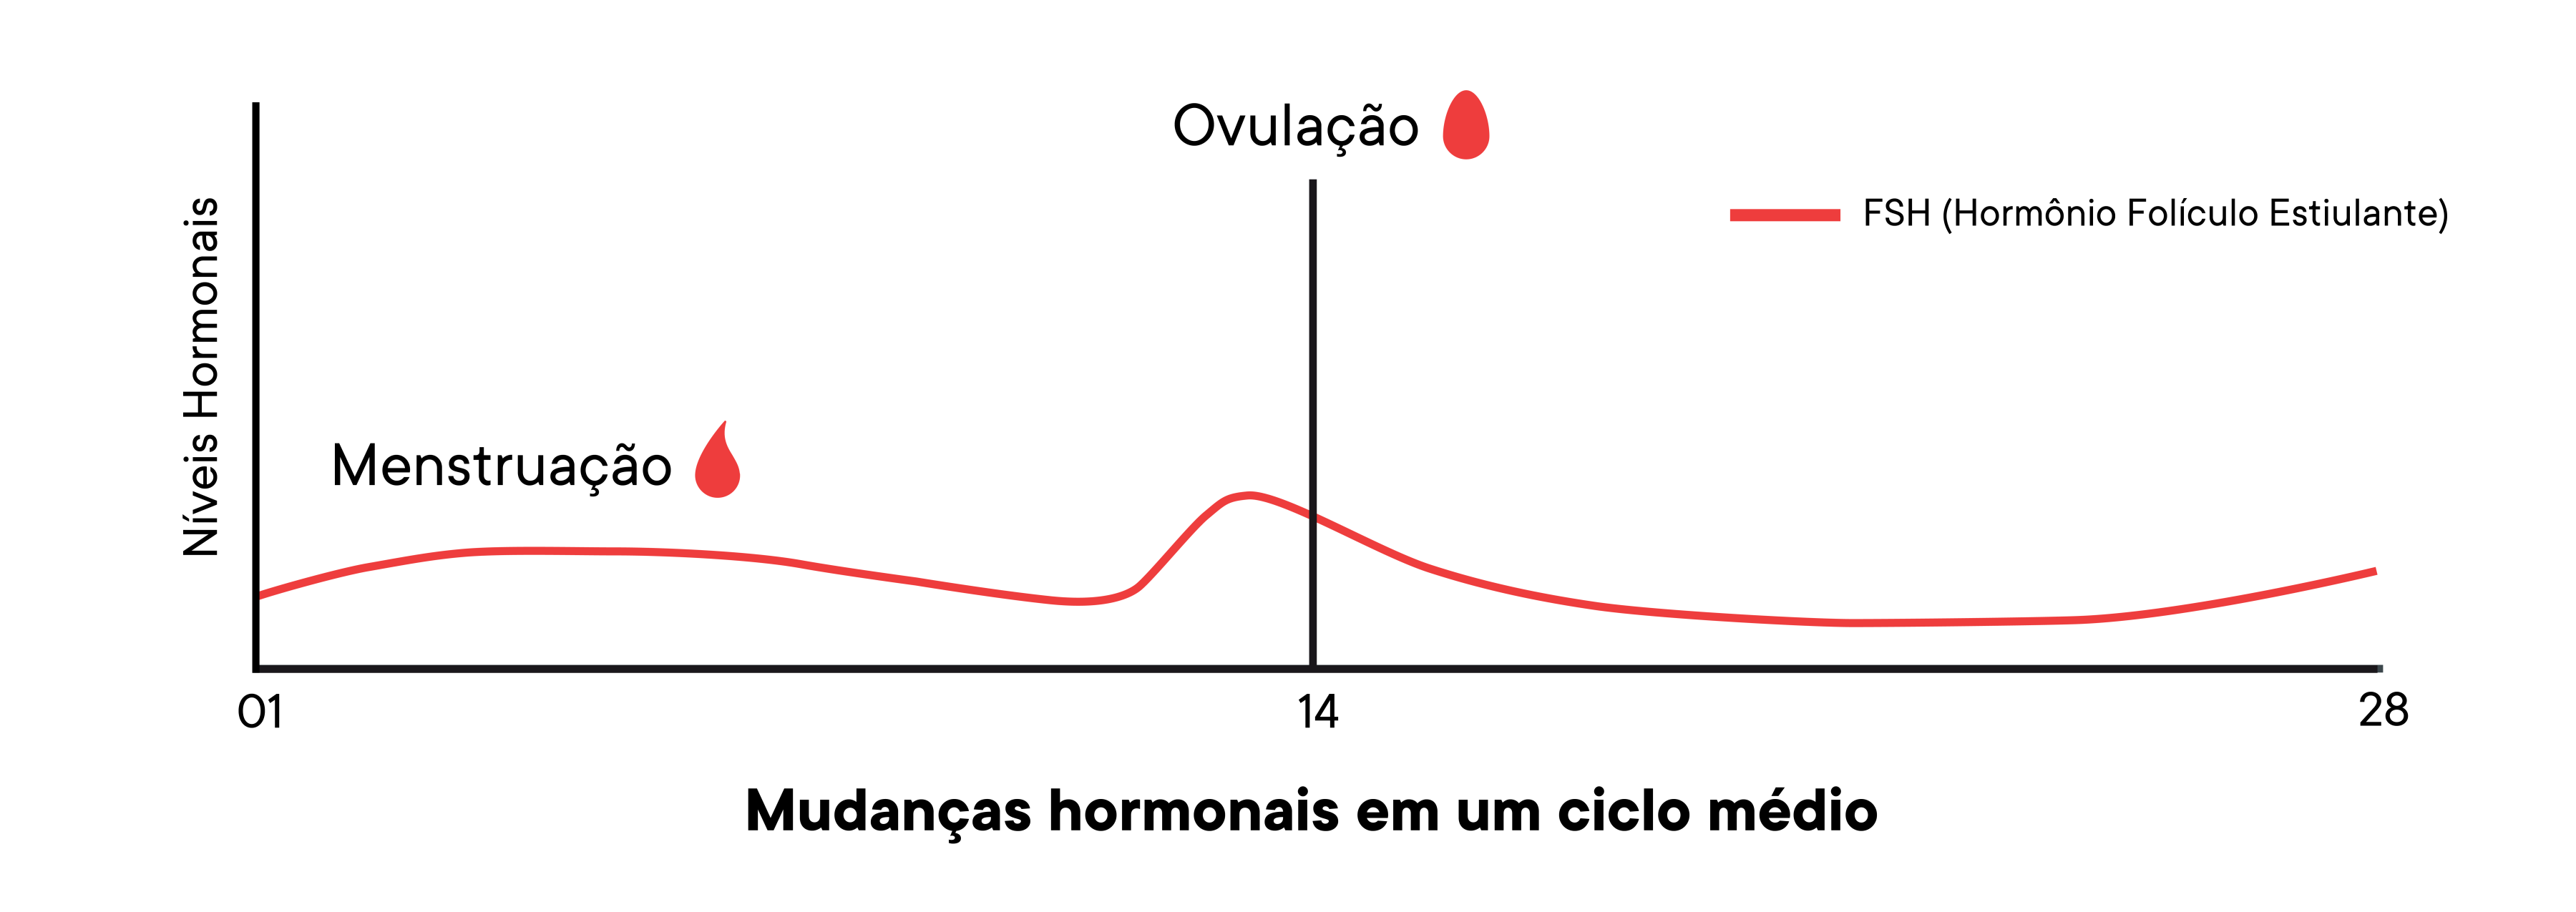 Um gráfico que mostra as mudanças dos níveis de hormônio em um ciclo médio ao longo do tempo